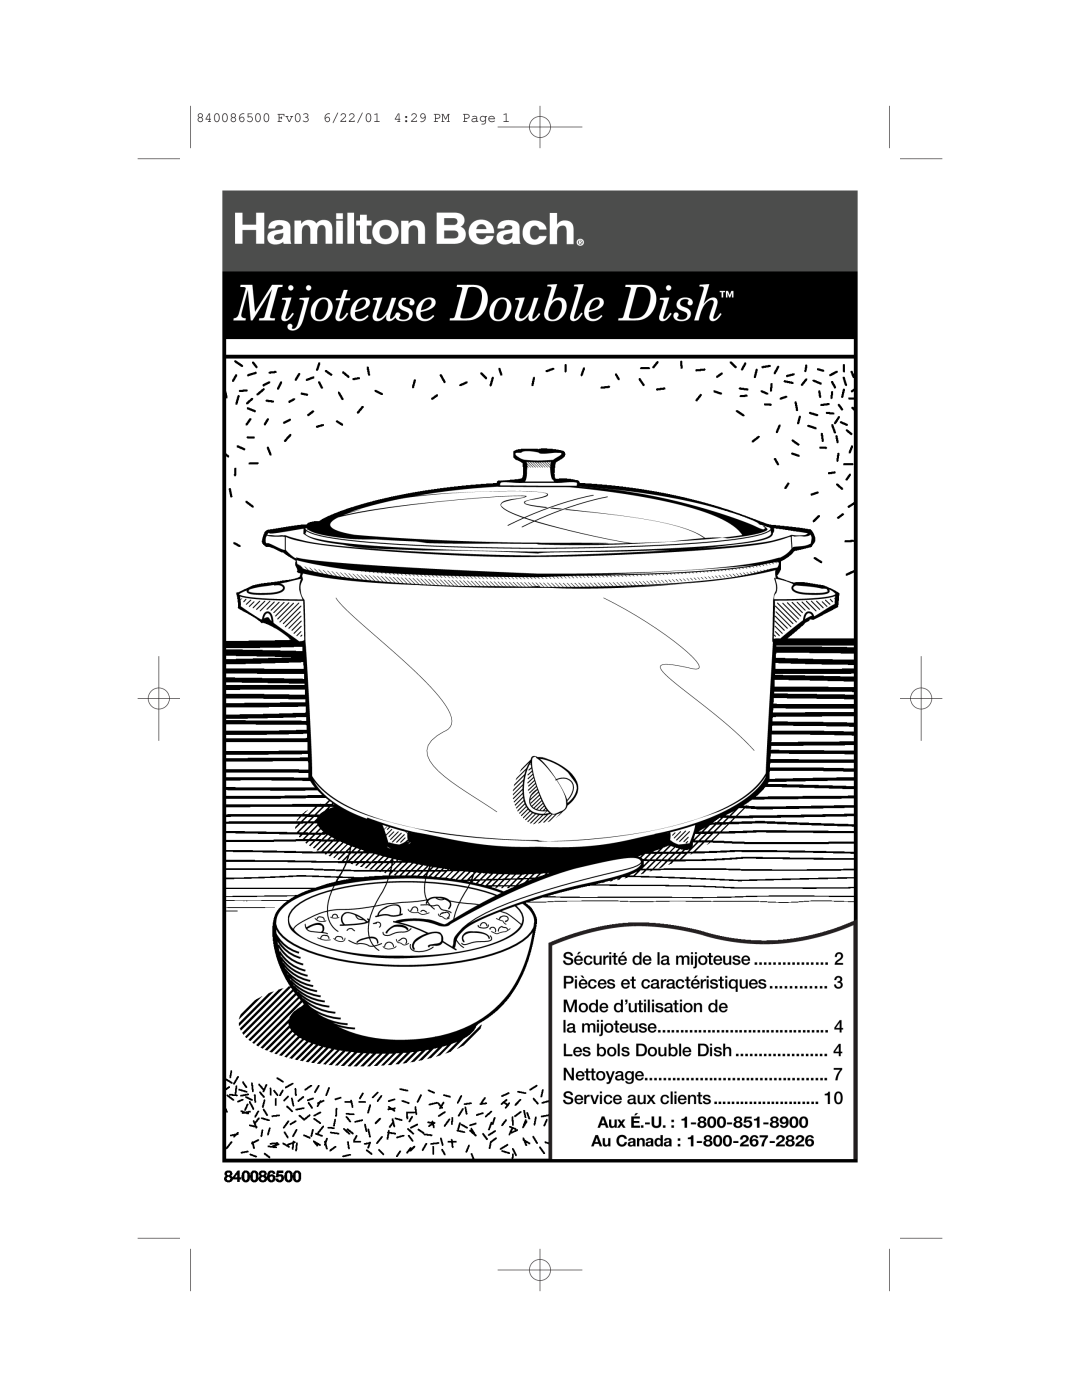 Hamilton Beach 33158 Mijoteuse Double Dish, Sécurité de la mijoteuse, Pièces et caractéristiques, Les bols Double Dish 